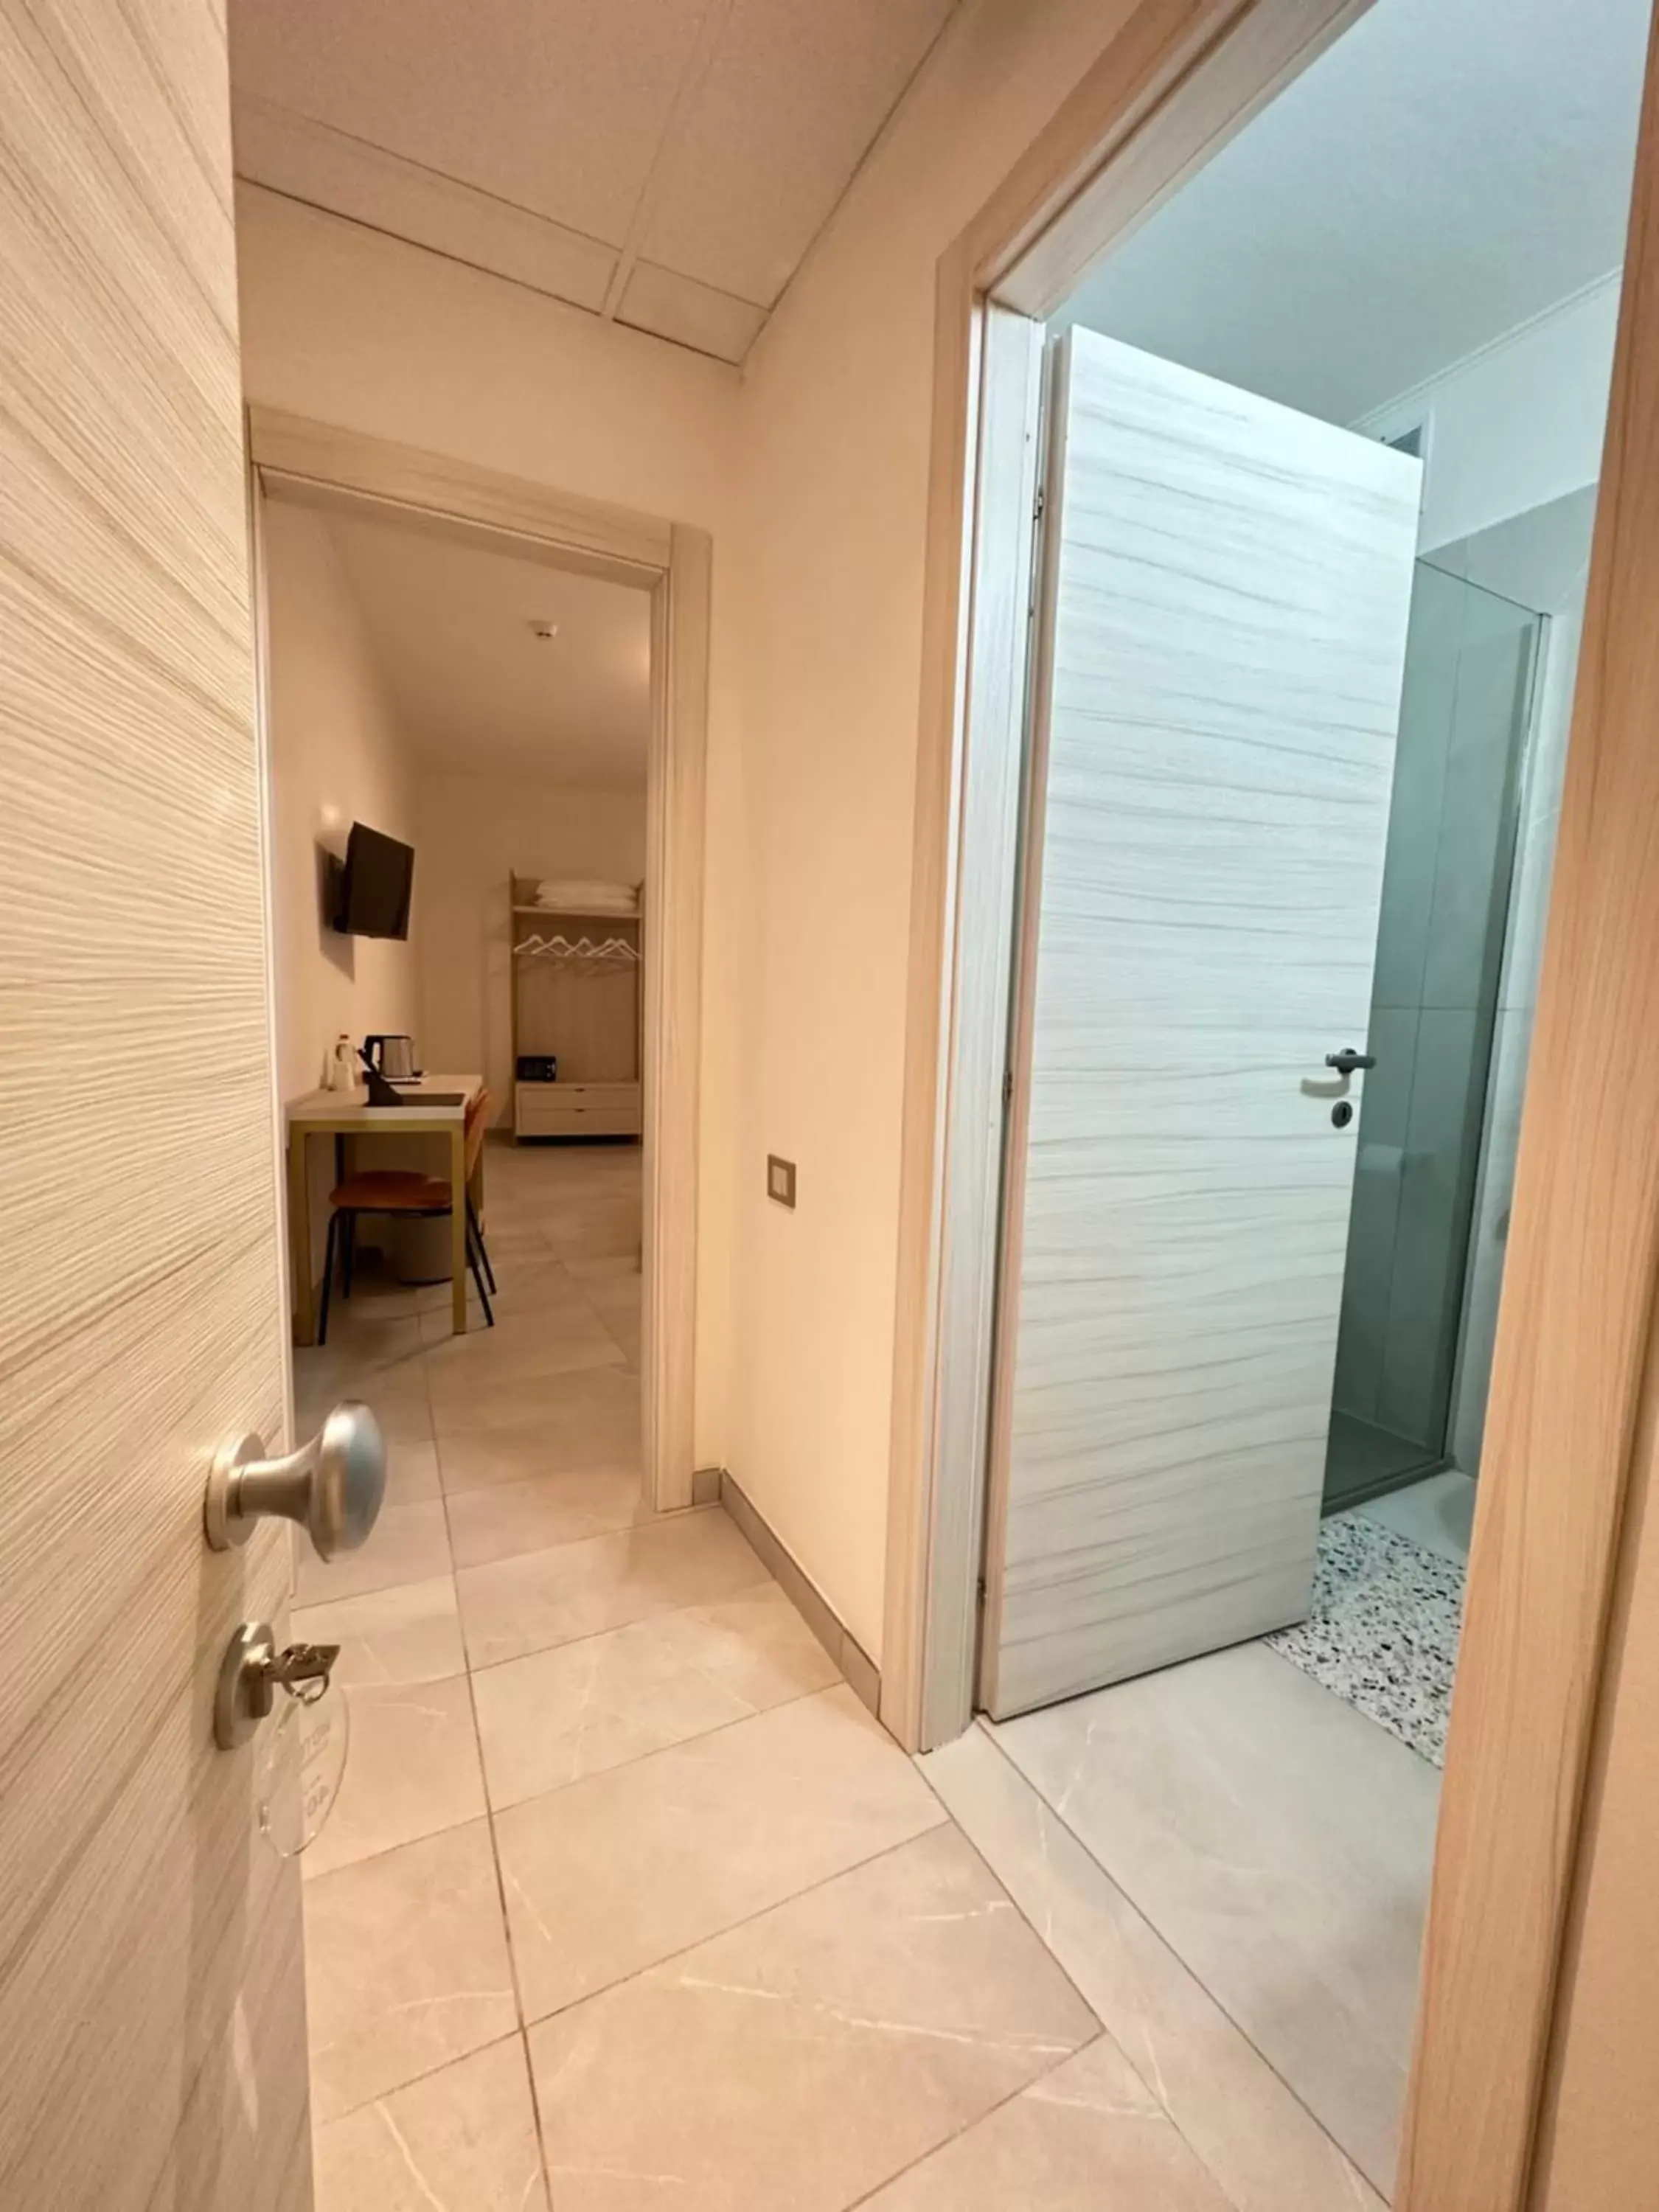 Bathroom in Hotel Donatello